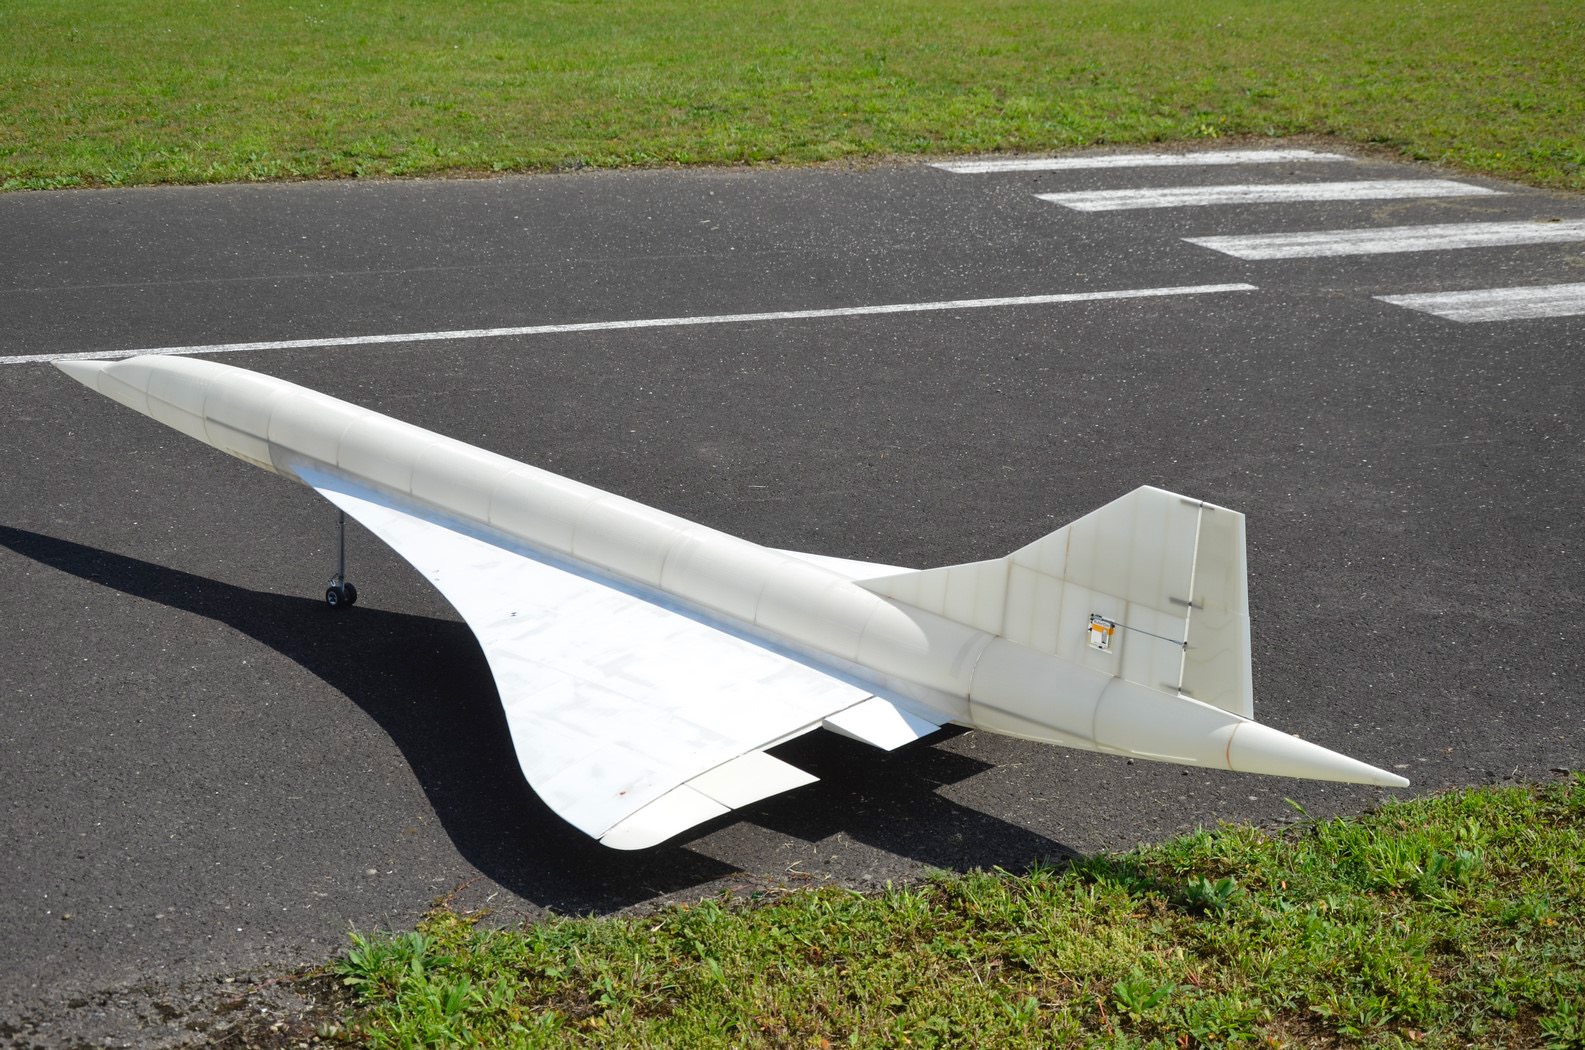 Concorde-essais-de-roulage-le-13-08-21-12